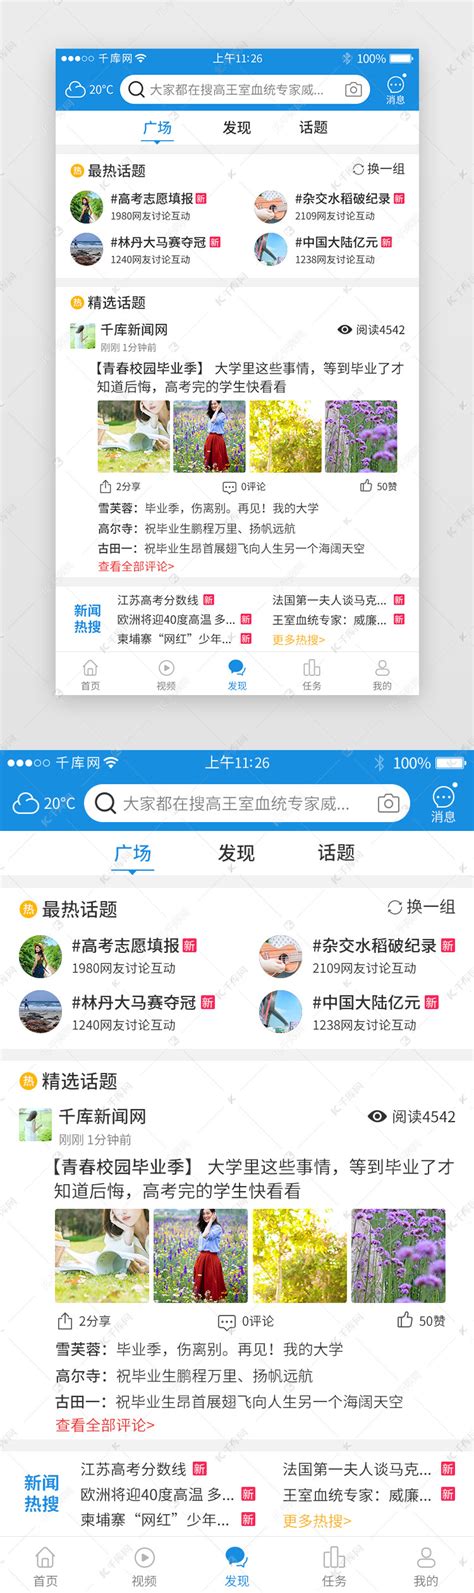 潮新闻app下载,潮新闻客户端app v5.0.4 - 浏览器家园